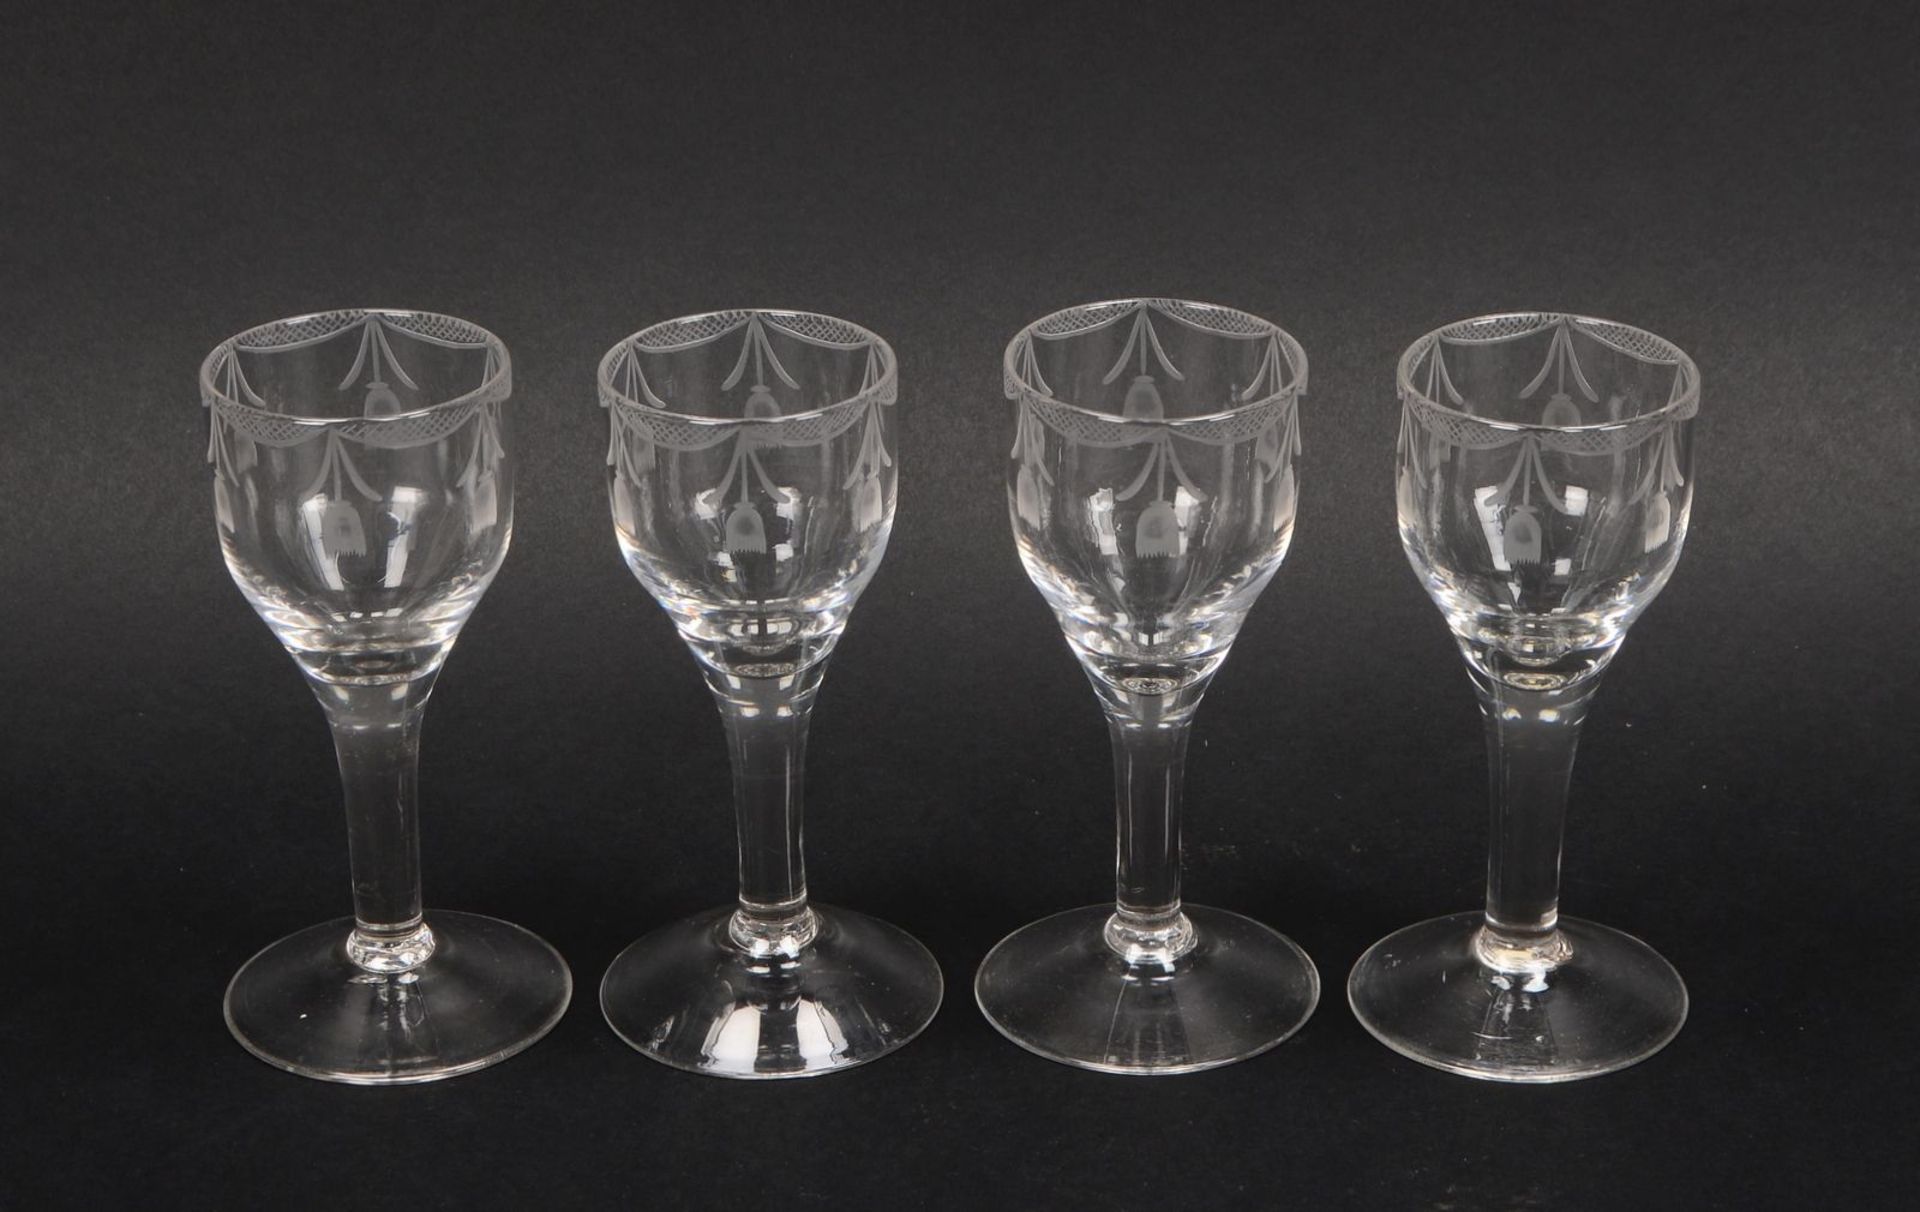 Weinglas-Konvolut (England - wohl Empire), teils mit mattiertem Dekor, jeweils mit Abriss, 4 St&uuml - Bild 2 aus 2